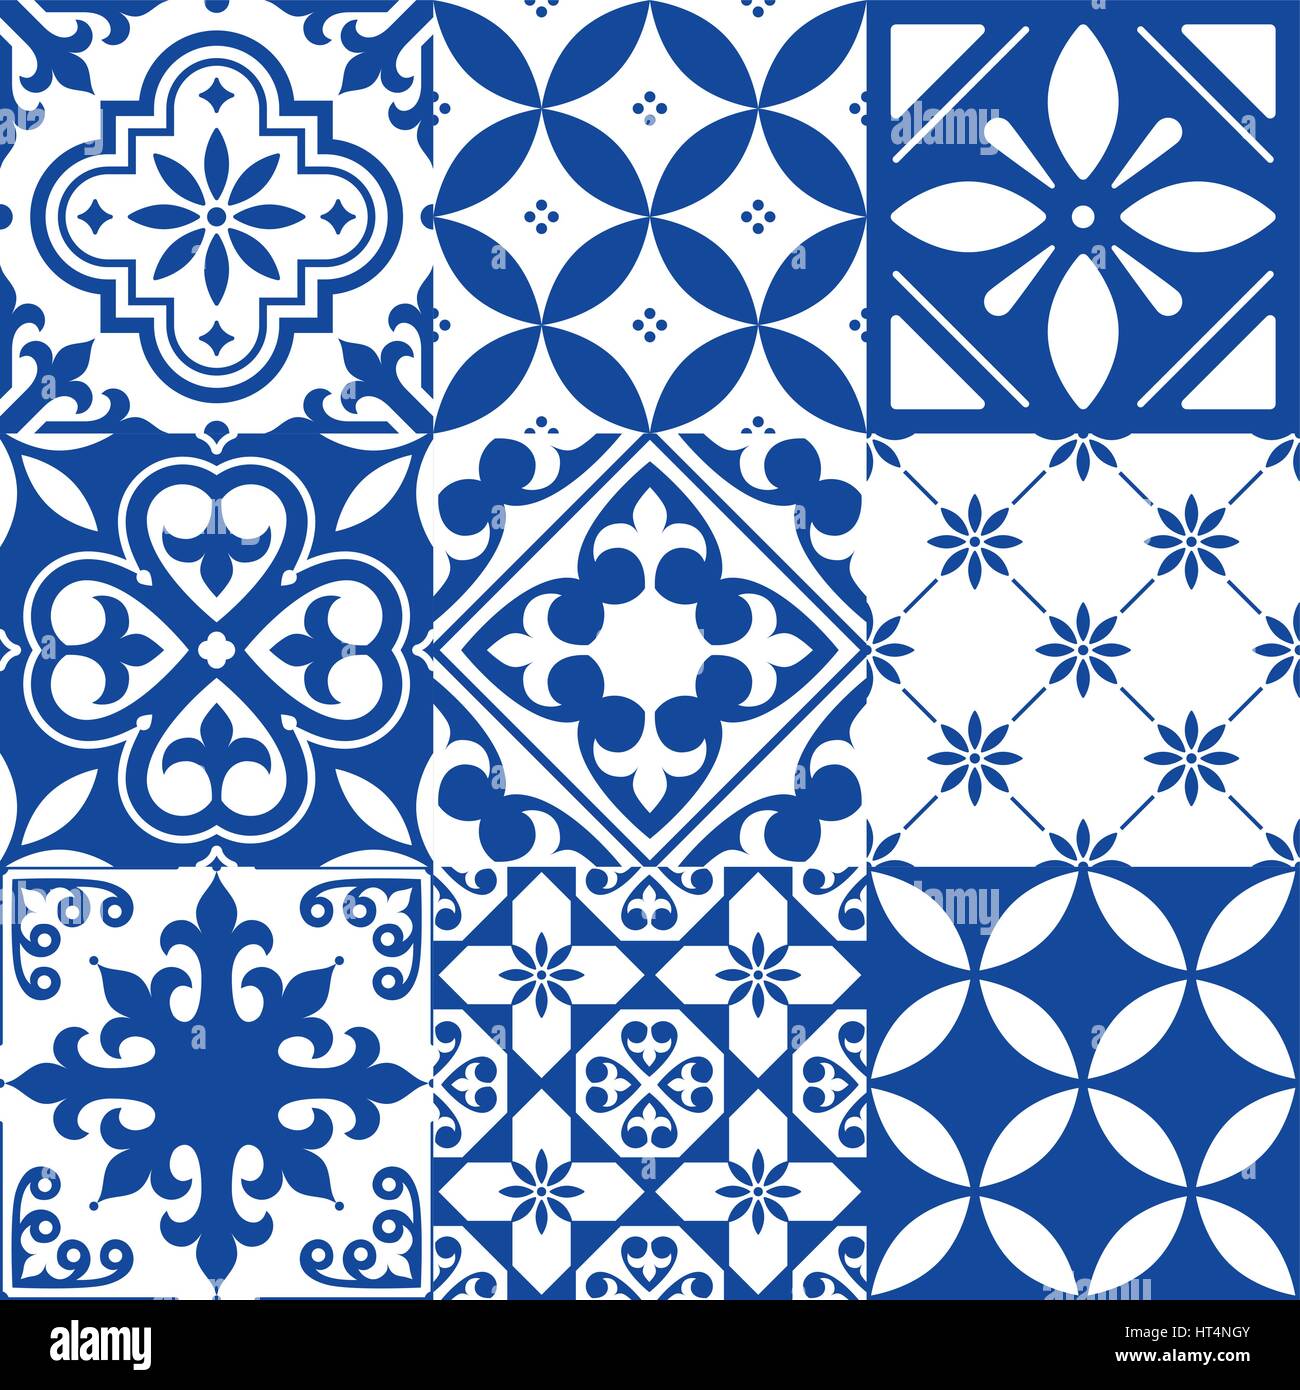 L'Espagnol Tuiles, carreaux marocains design, motif bleu marine transparente Illustration de Vecteur